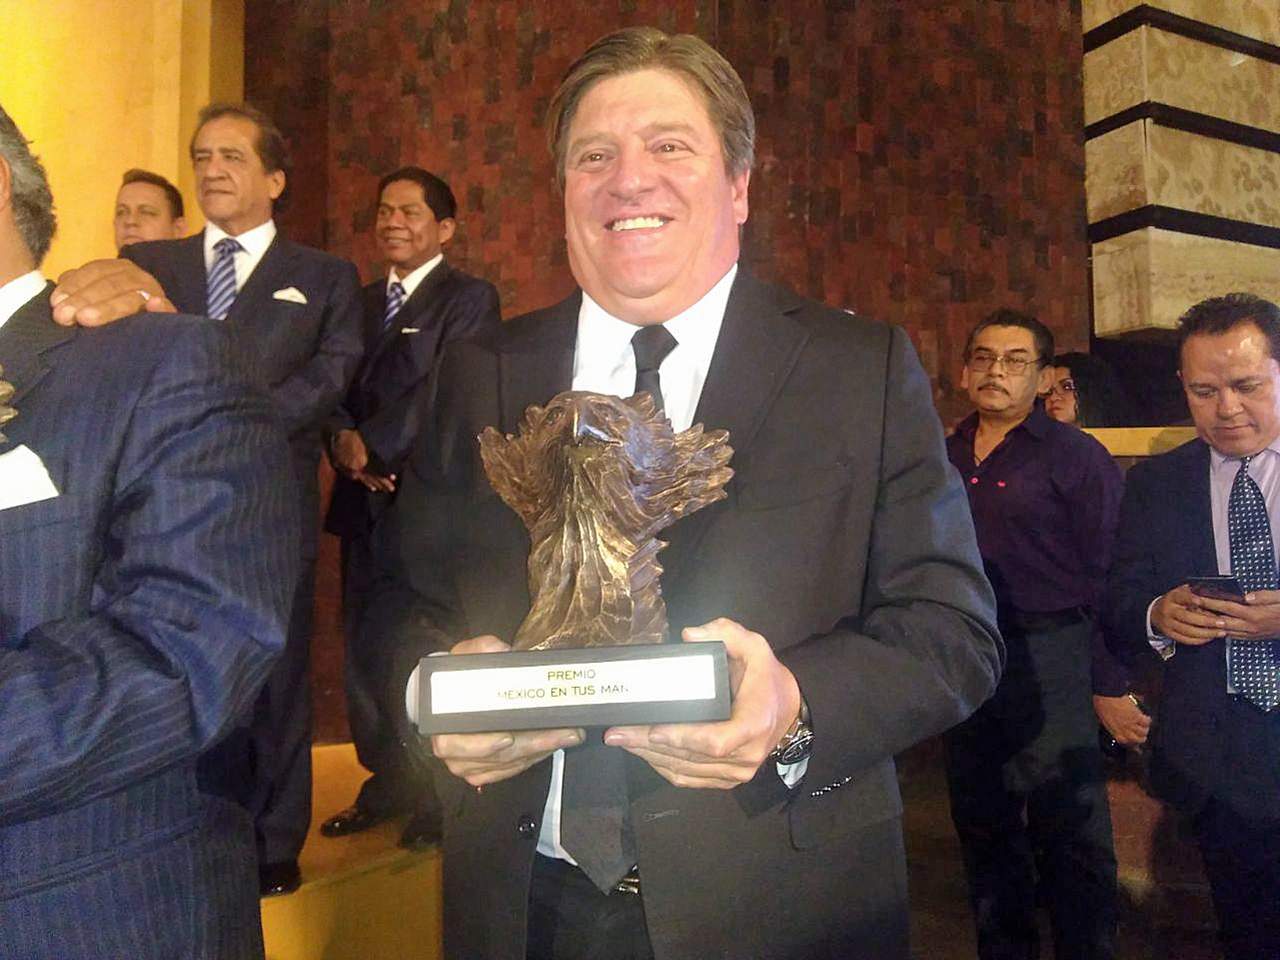 El entrenador del América recibió en el recinto legislativo de San Lázaro el premio 'México en tus manos'. Al recibir el galardón, el 'Piojo' emitió un discurso de agradecimiento. (EL UNIVERSAL)